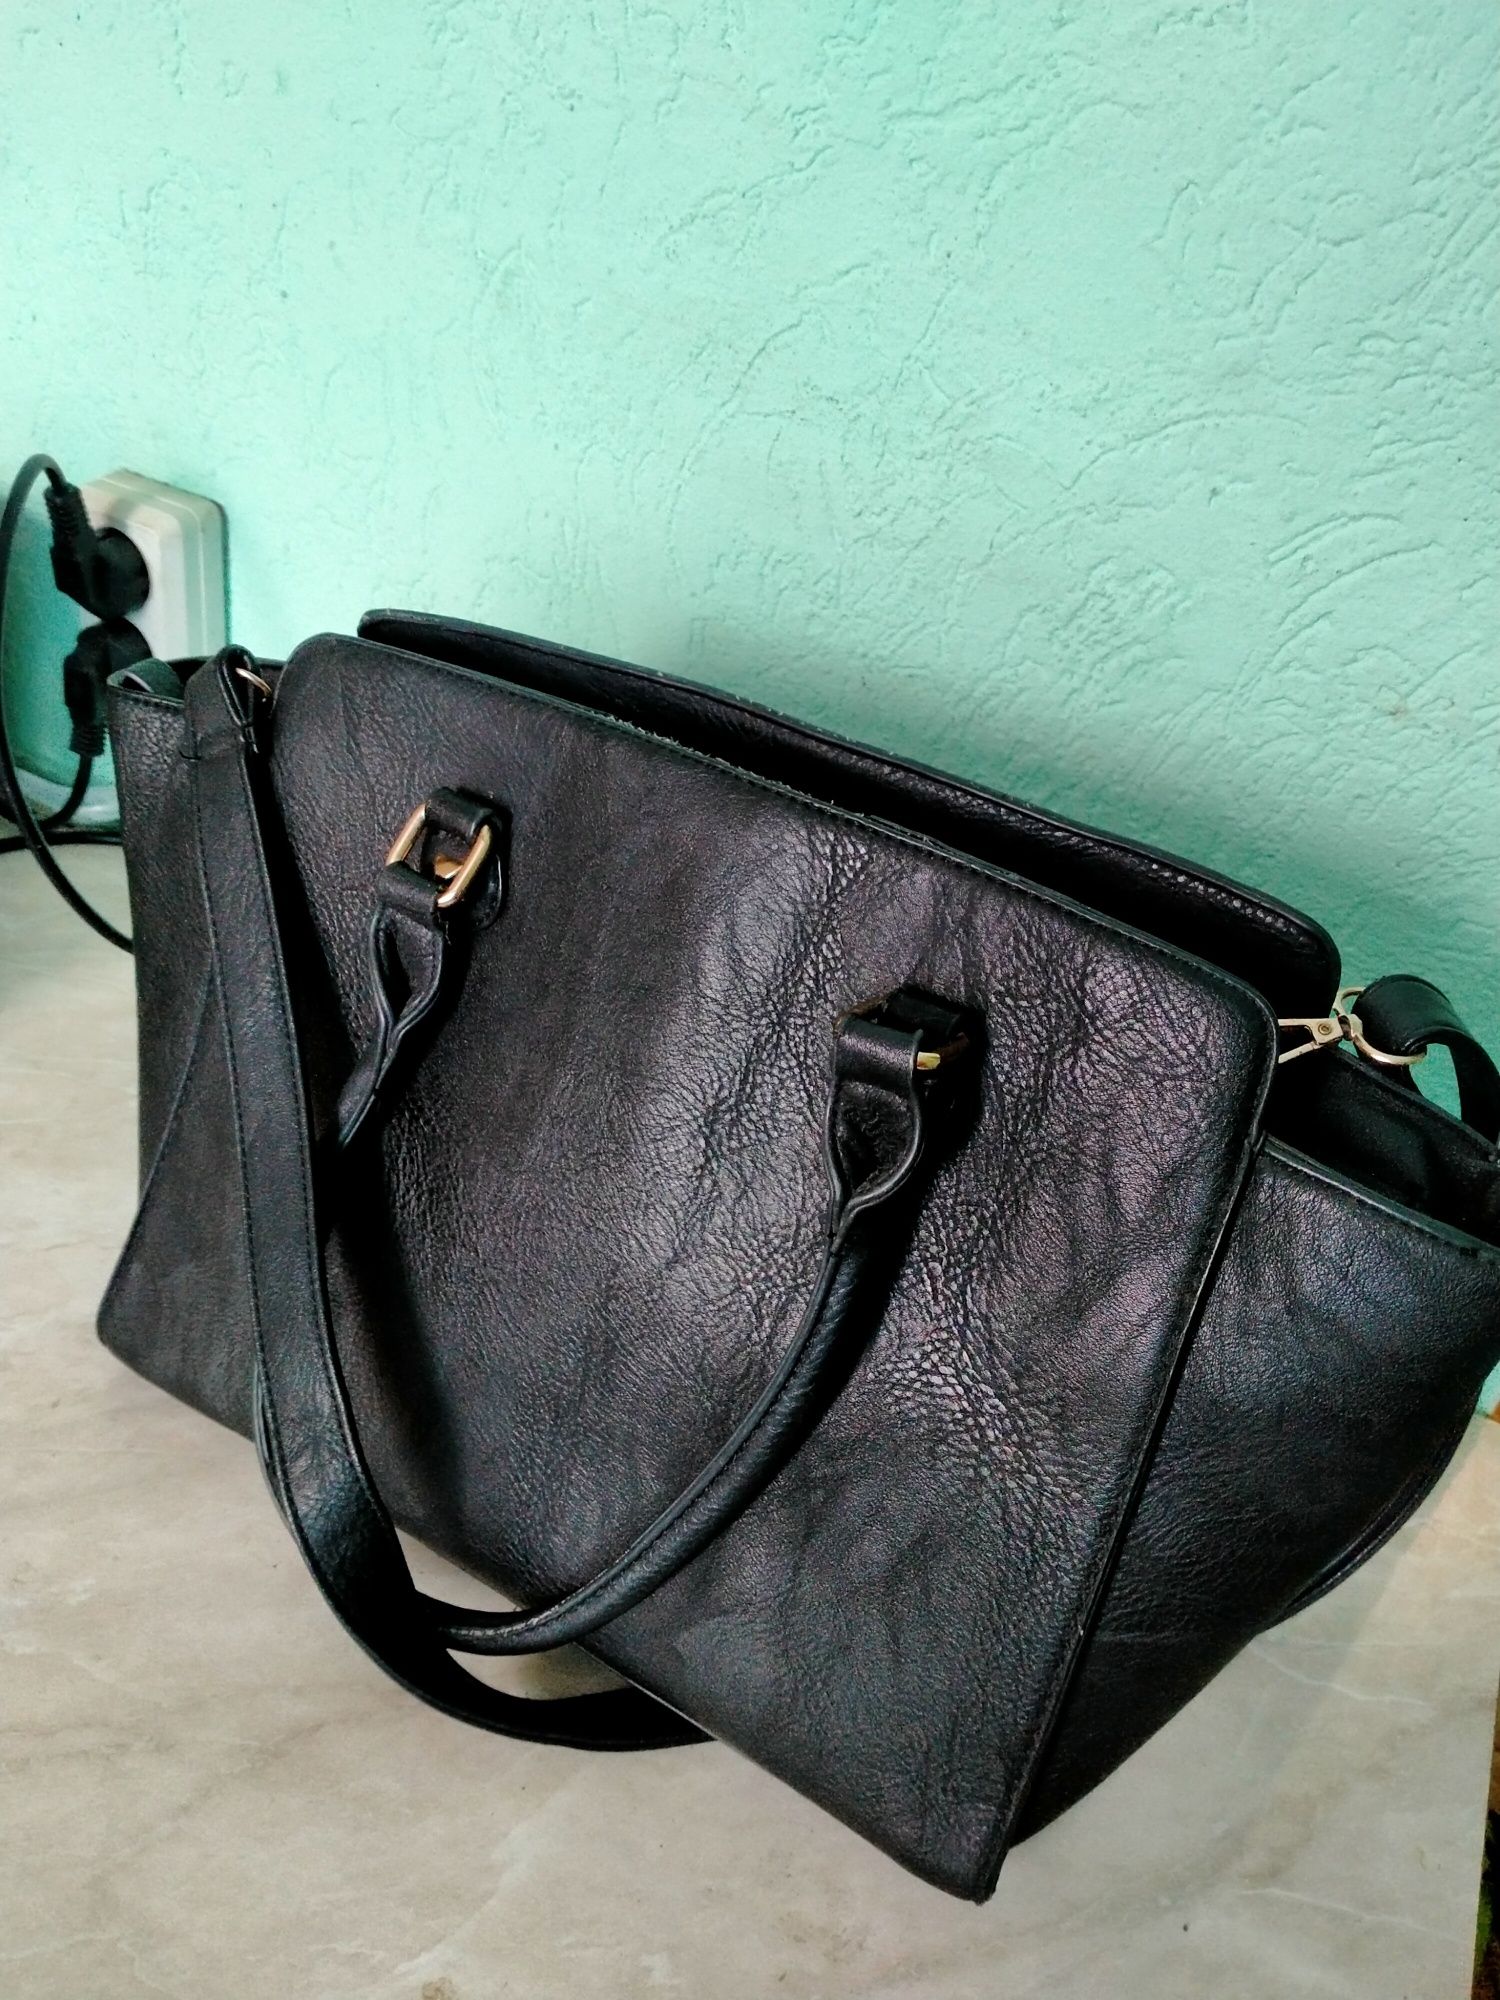 Вместительная сумка сэтчел бренда Respect для офиса или учёбы